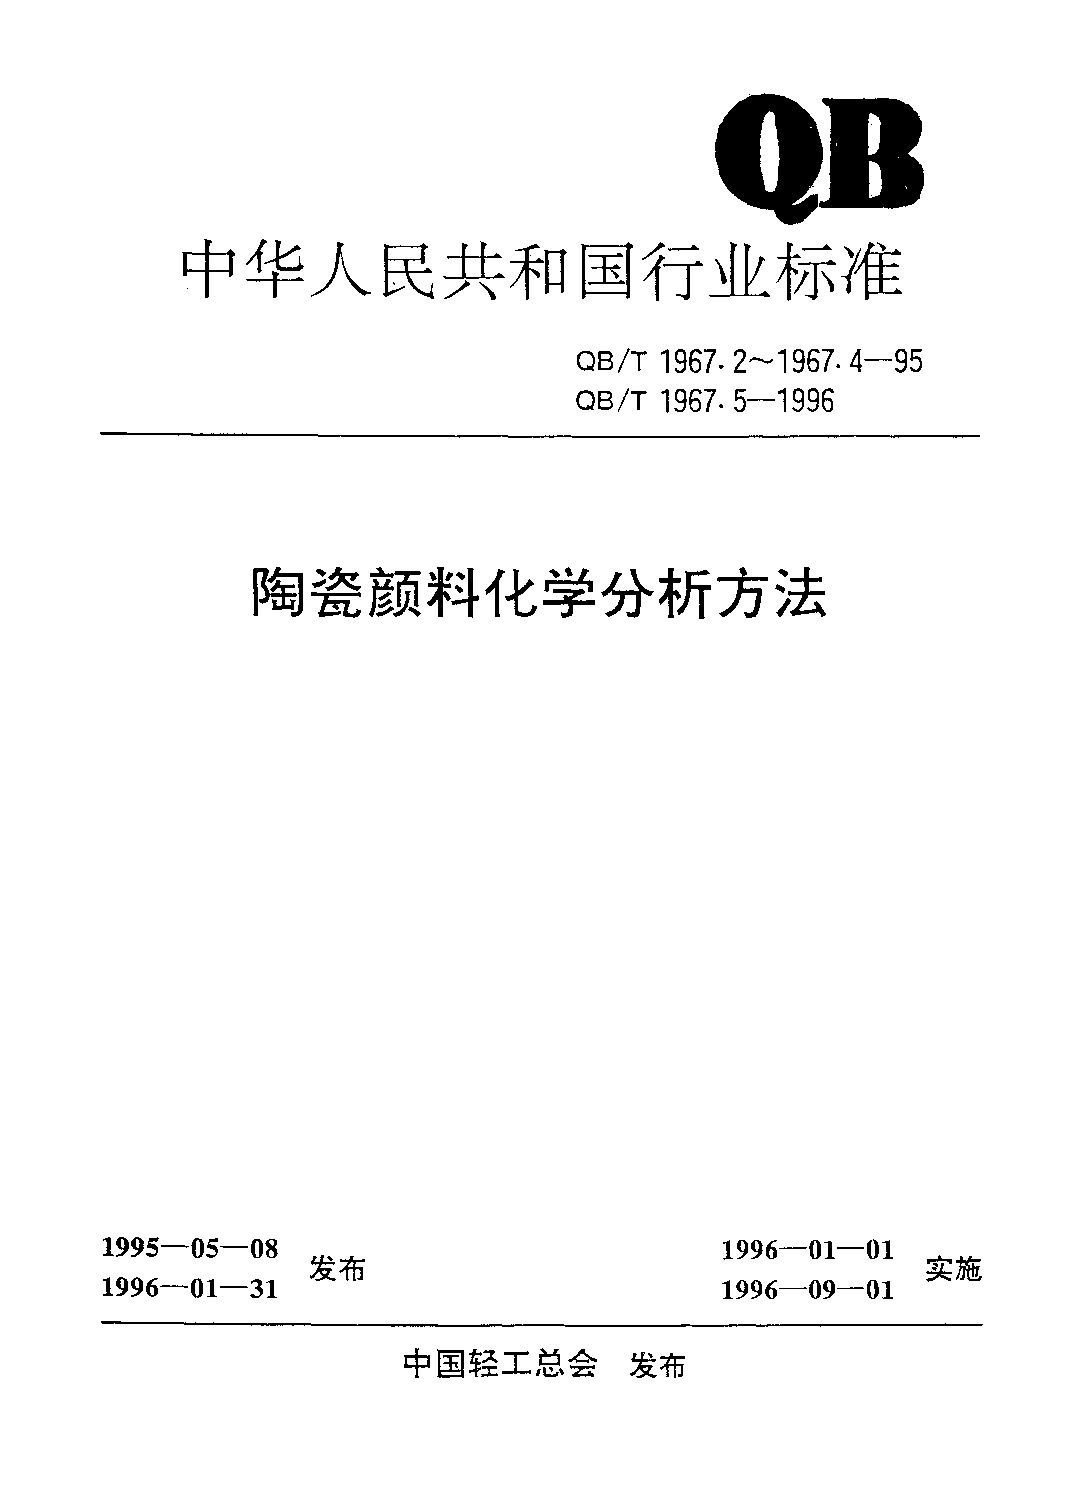 QB/T 1967.2-1995封面图